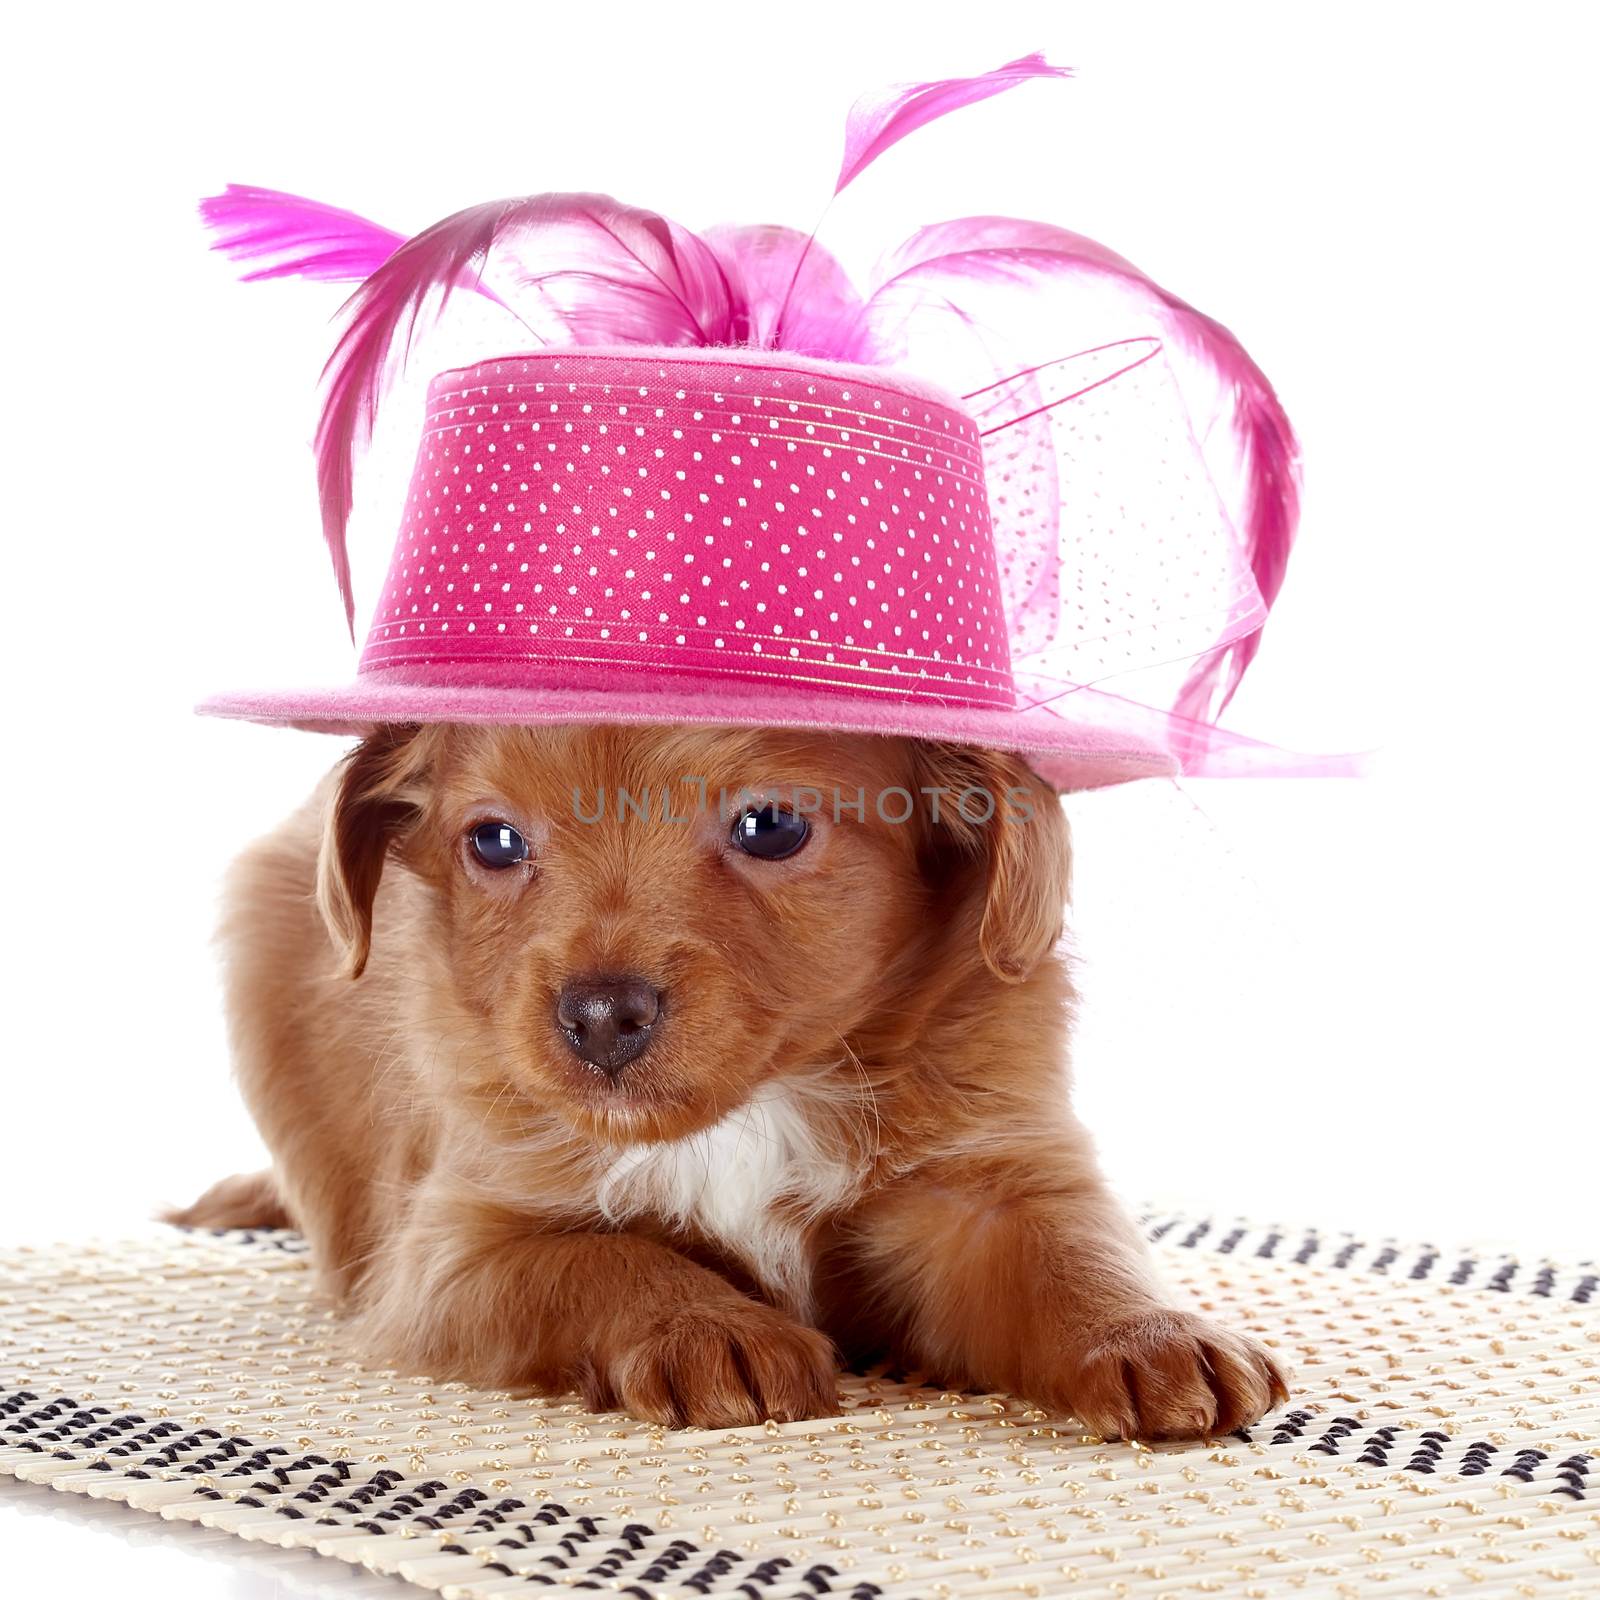 Puppy in a hat on a rug. by Azaliya